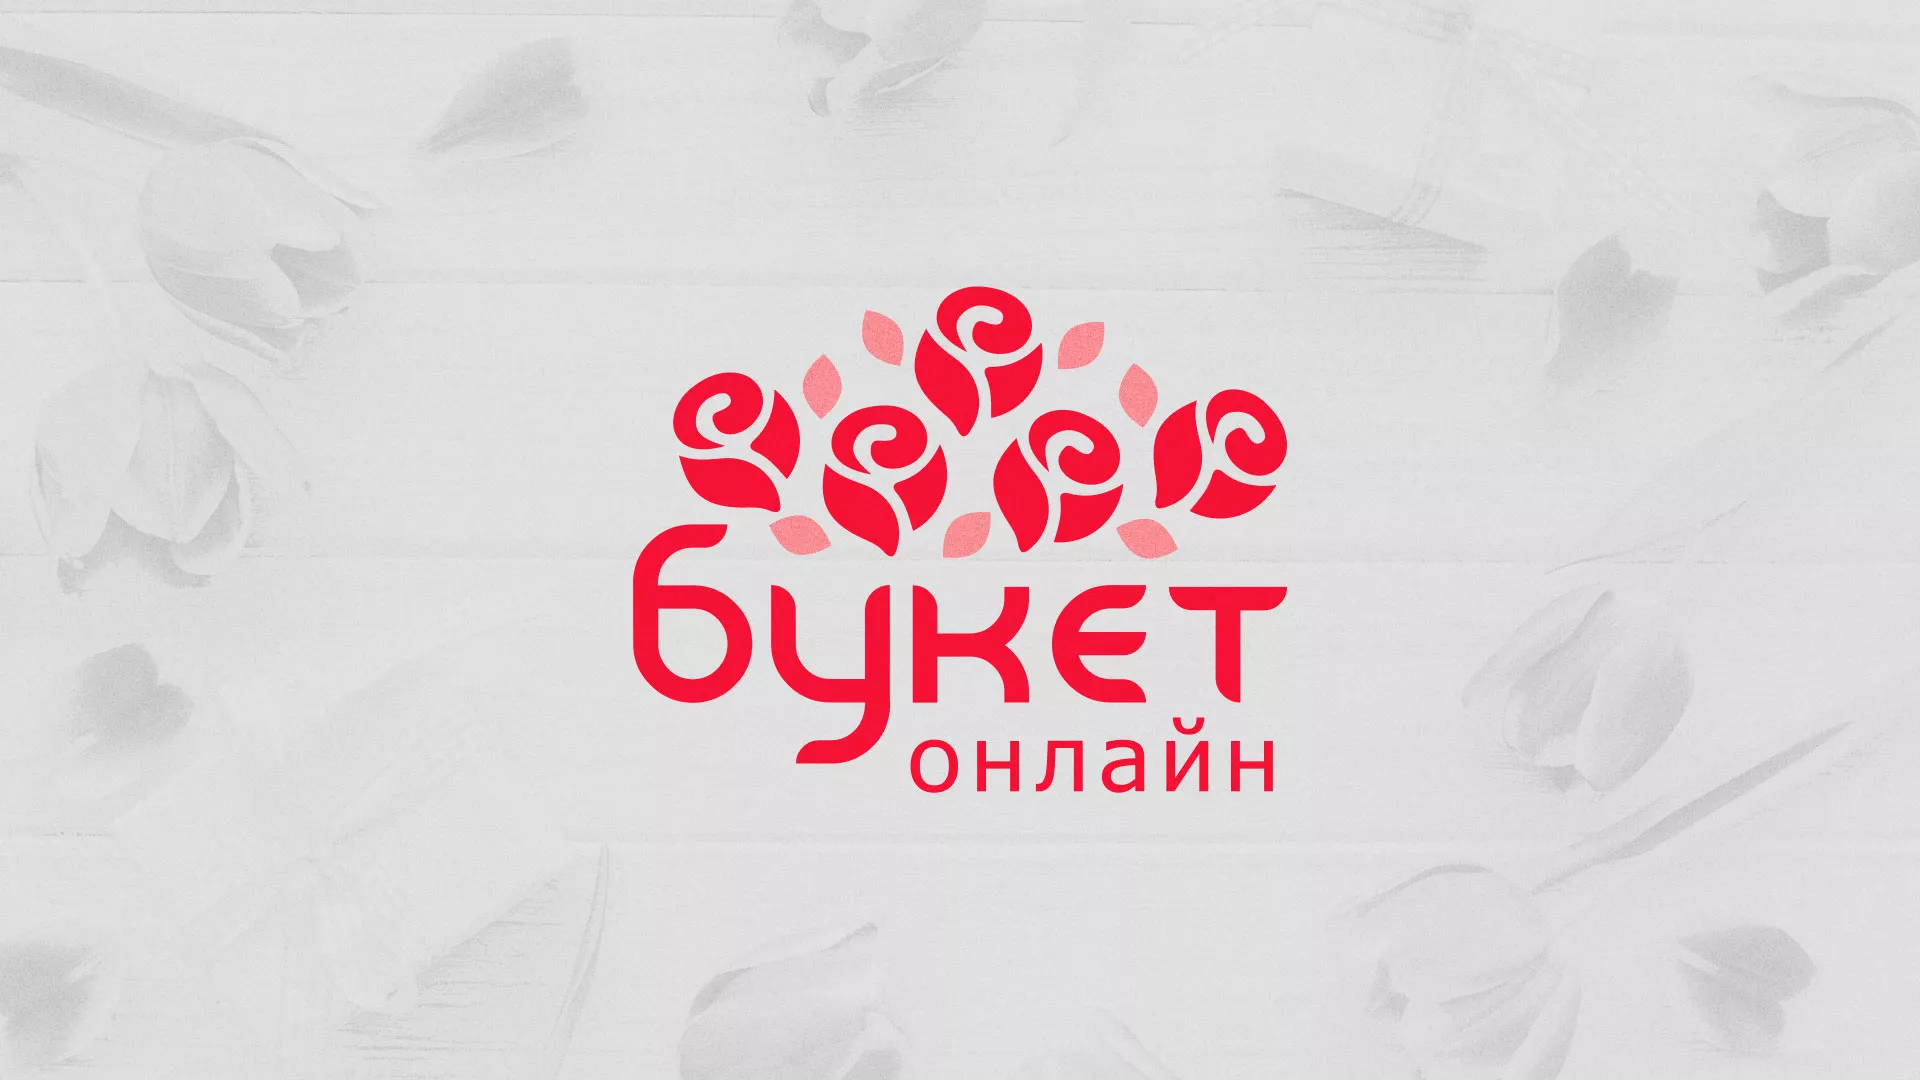 Создание интернет-магазина «Букет-онлайн» по цветам в Иваново